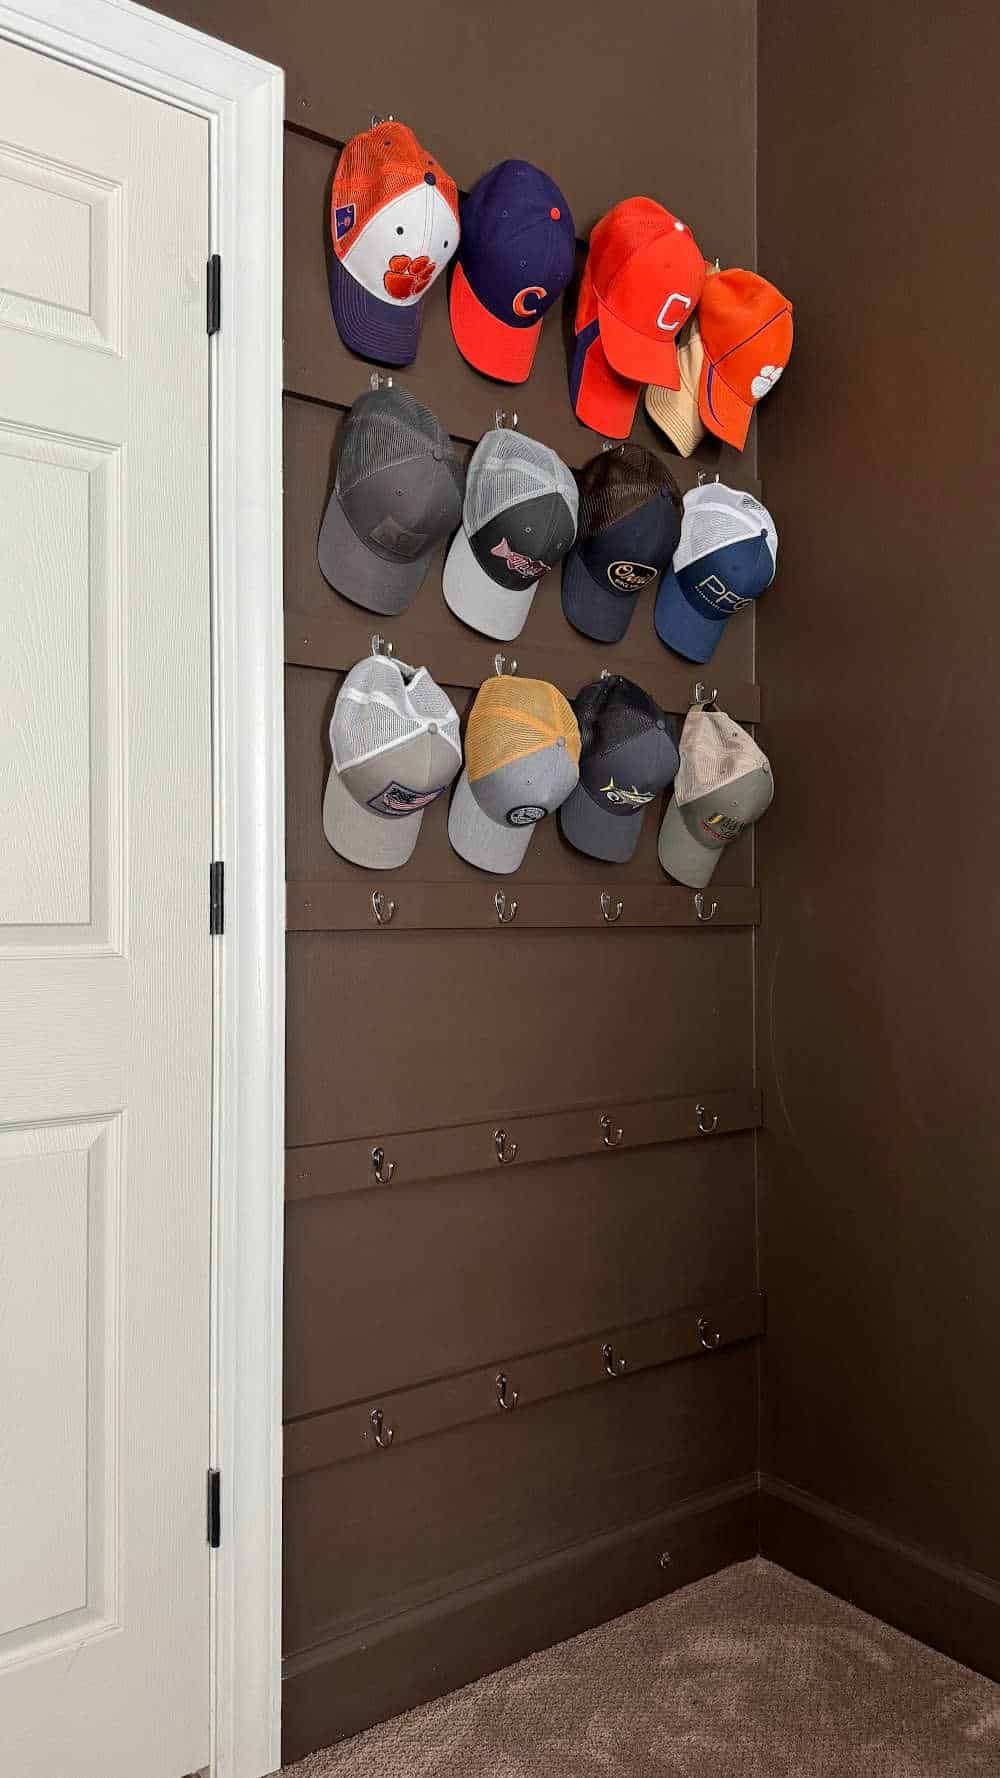 hat hook organizer behind the door in the master bedroom